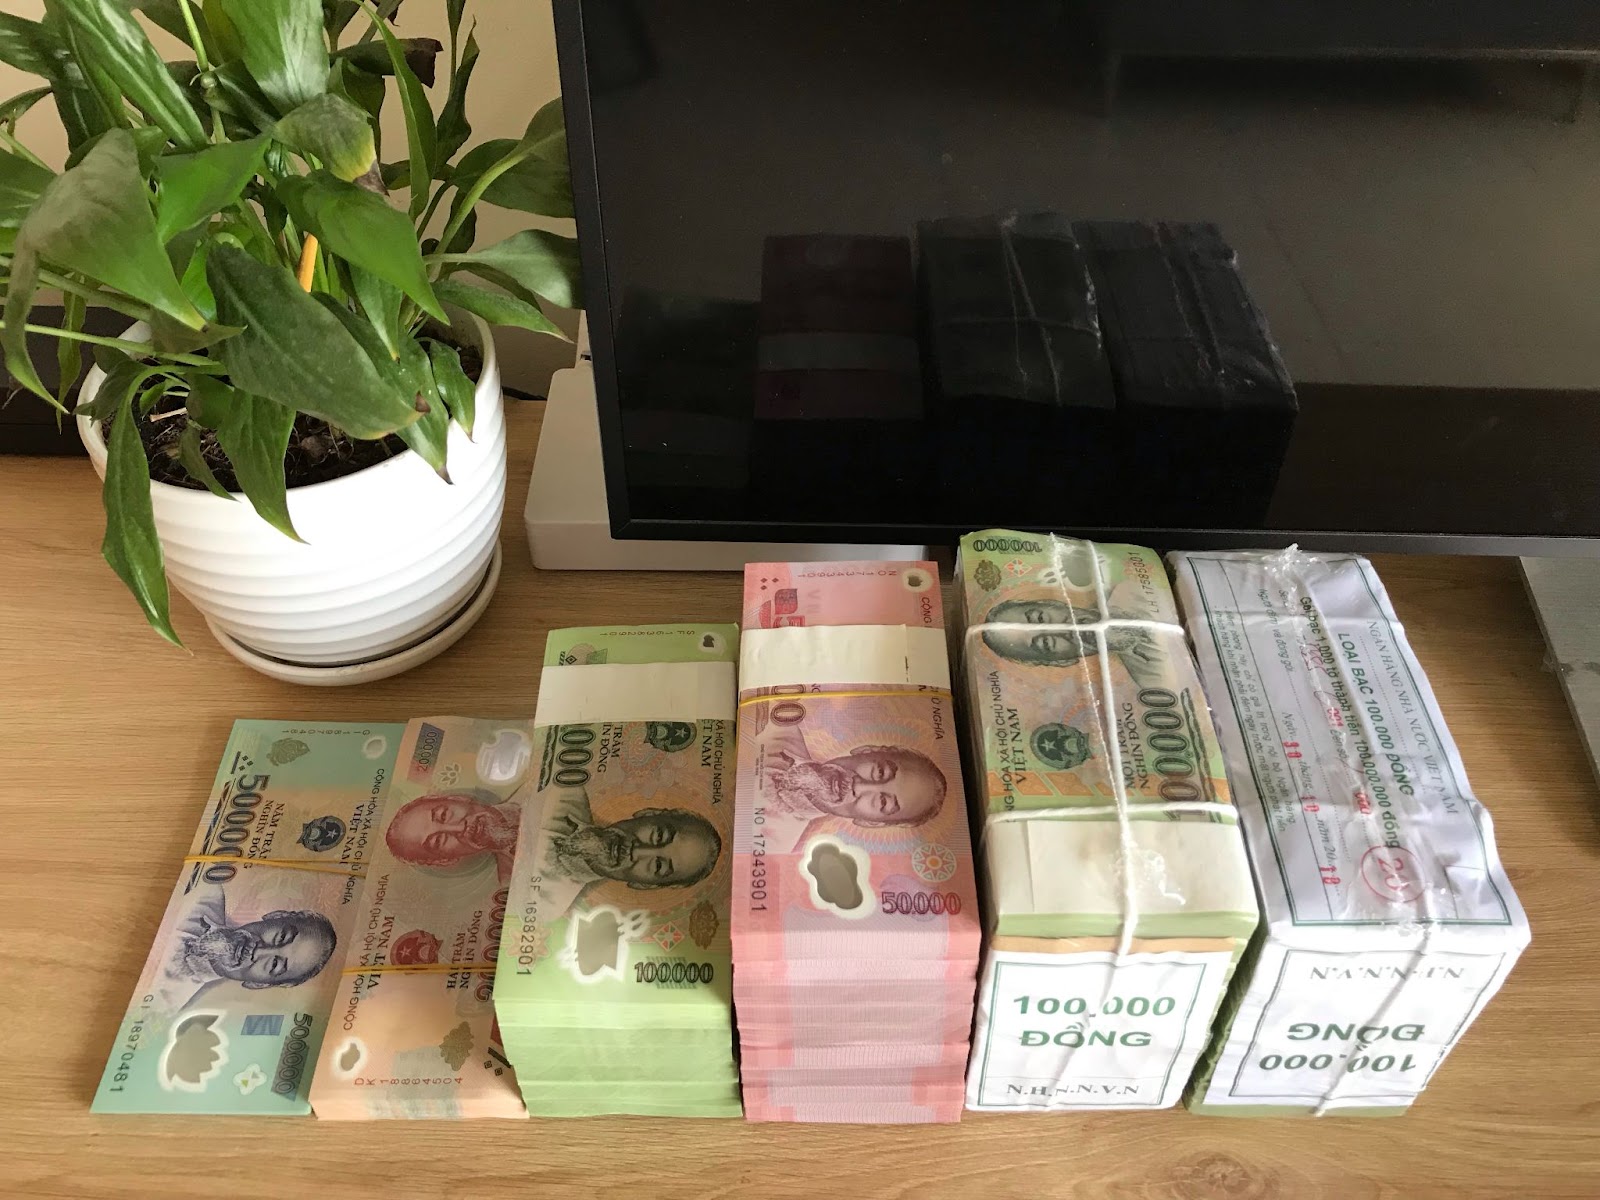 Một số lưu ý khi đổi tiền mới tại ngân hàng Vietcombank